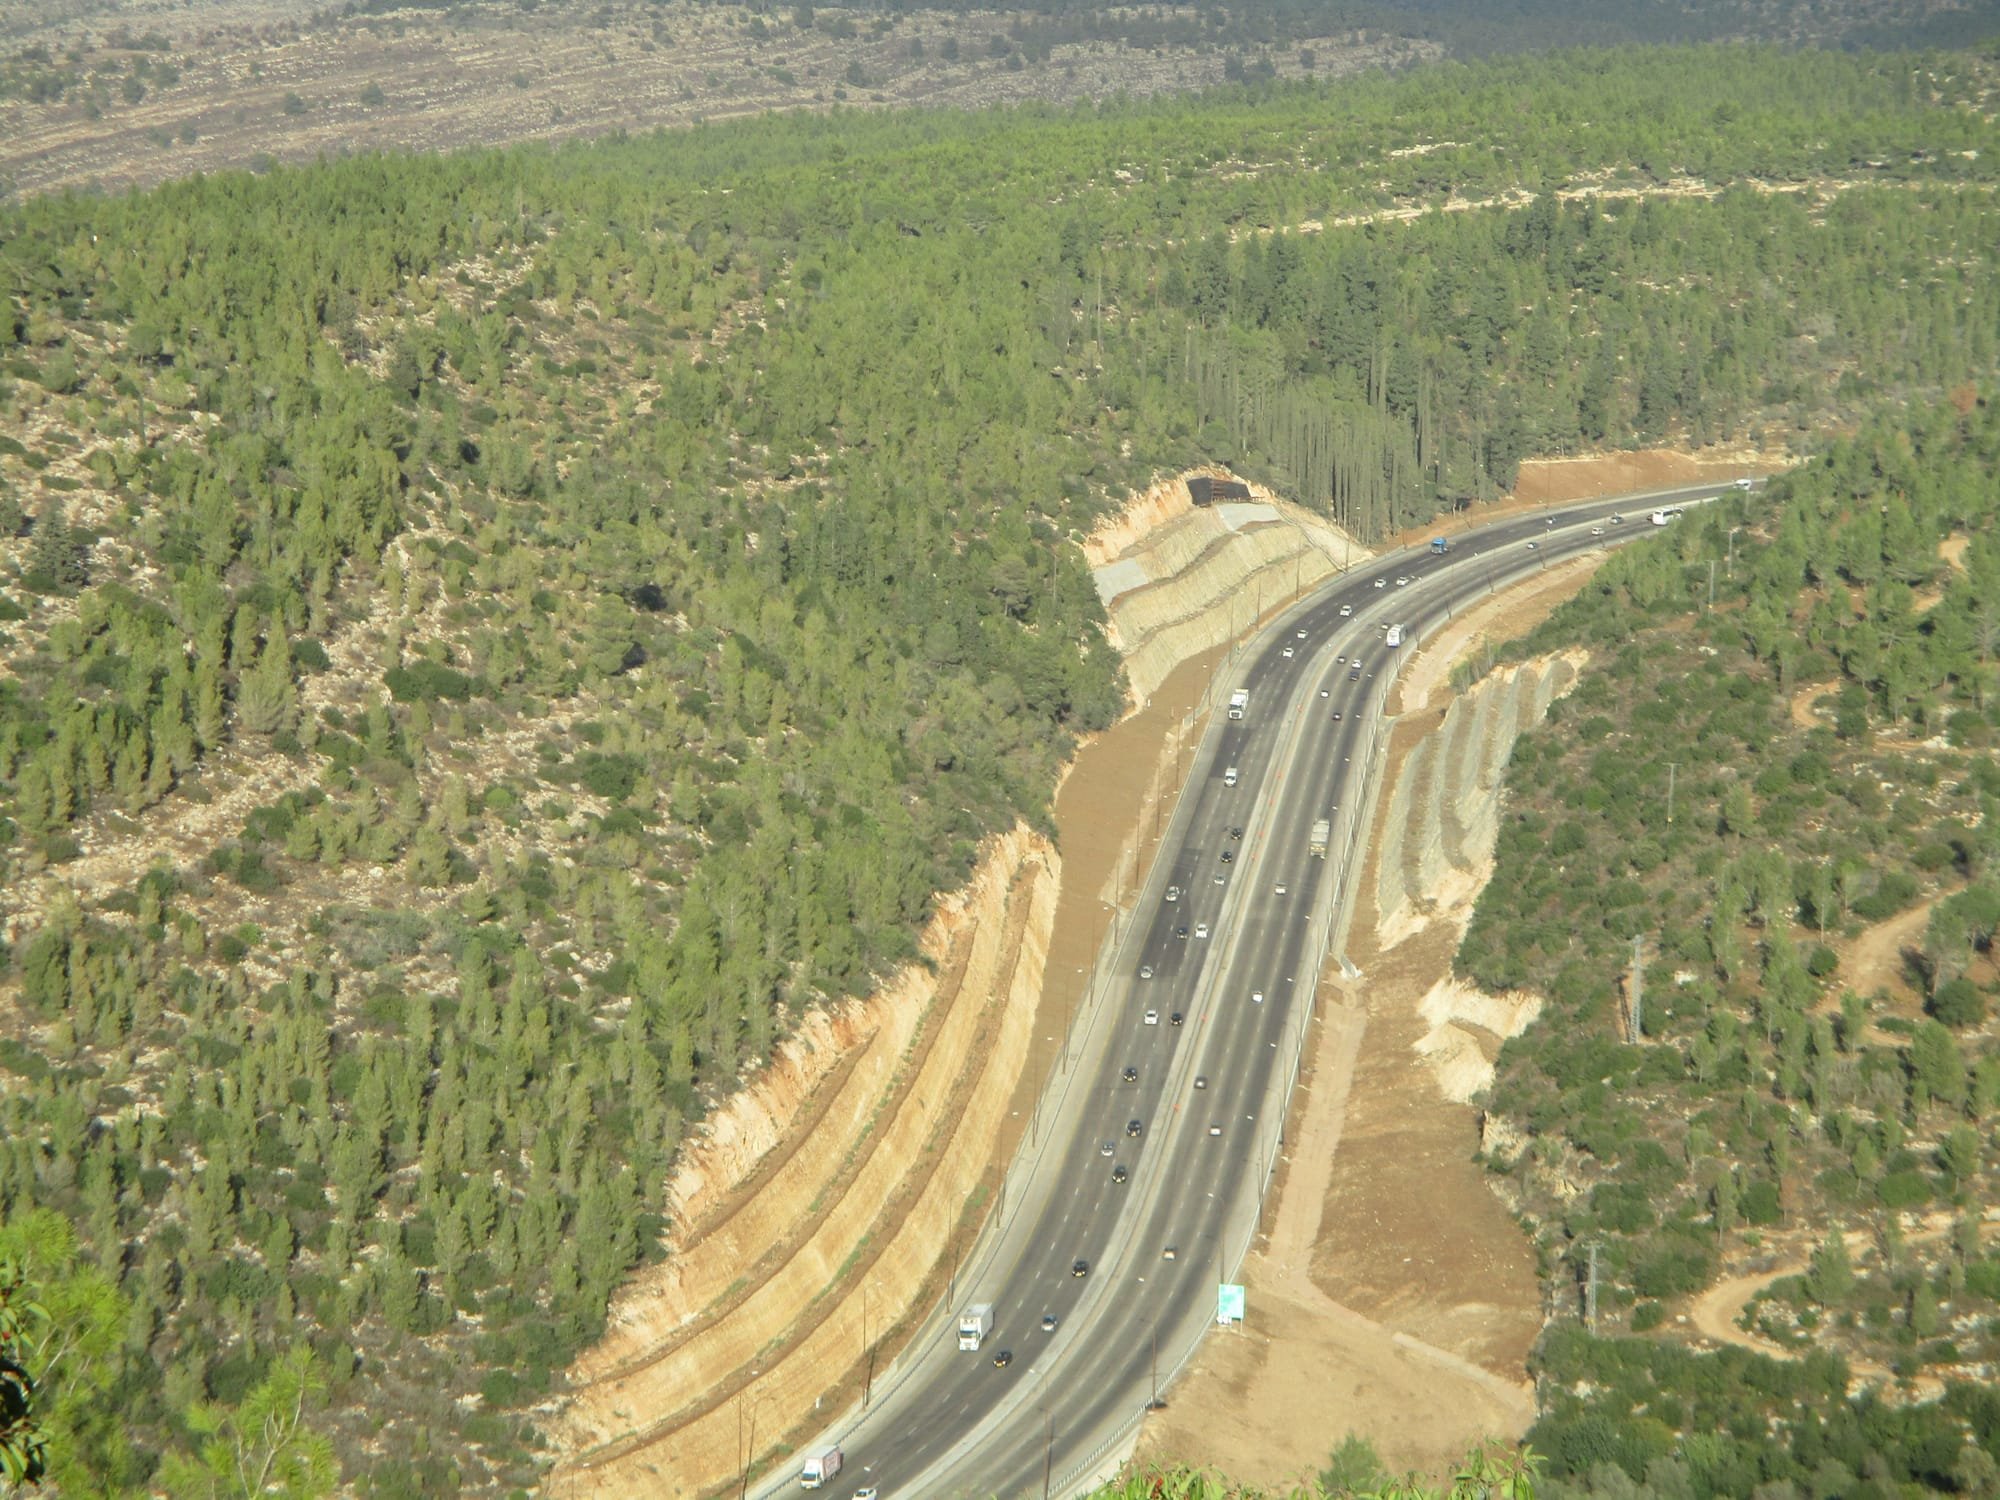 The Highway climbs towards Jerusalem